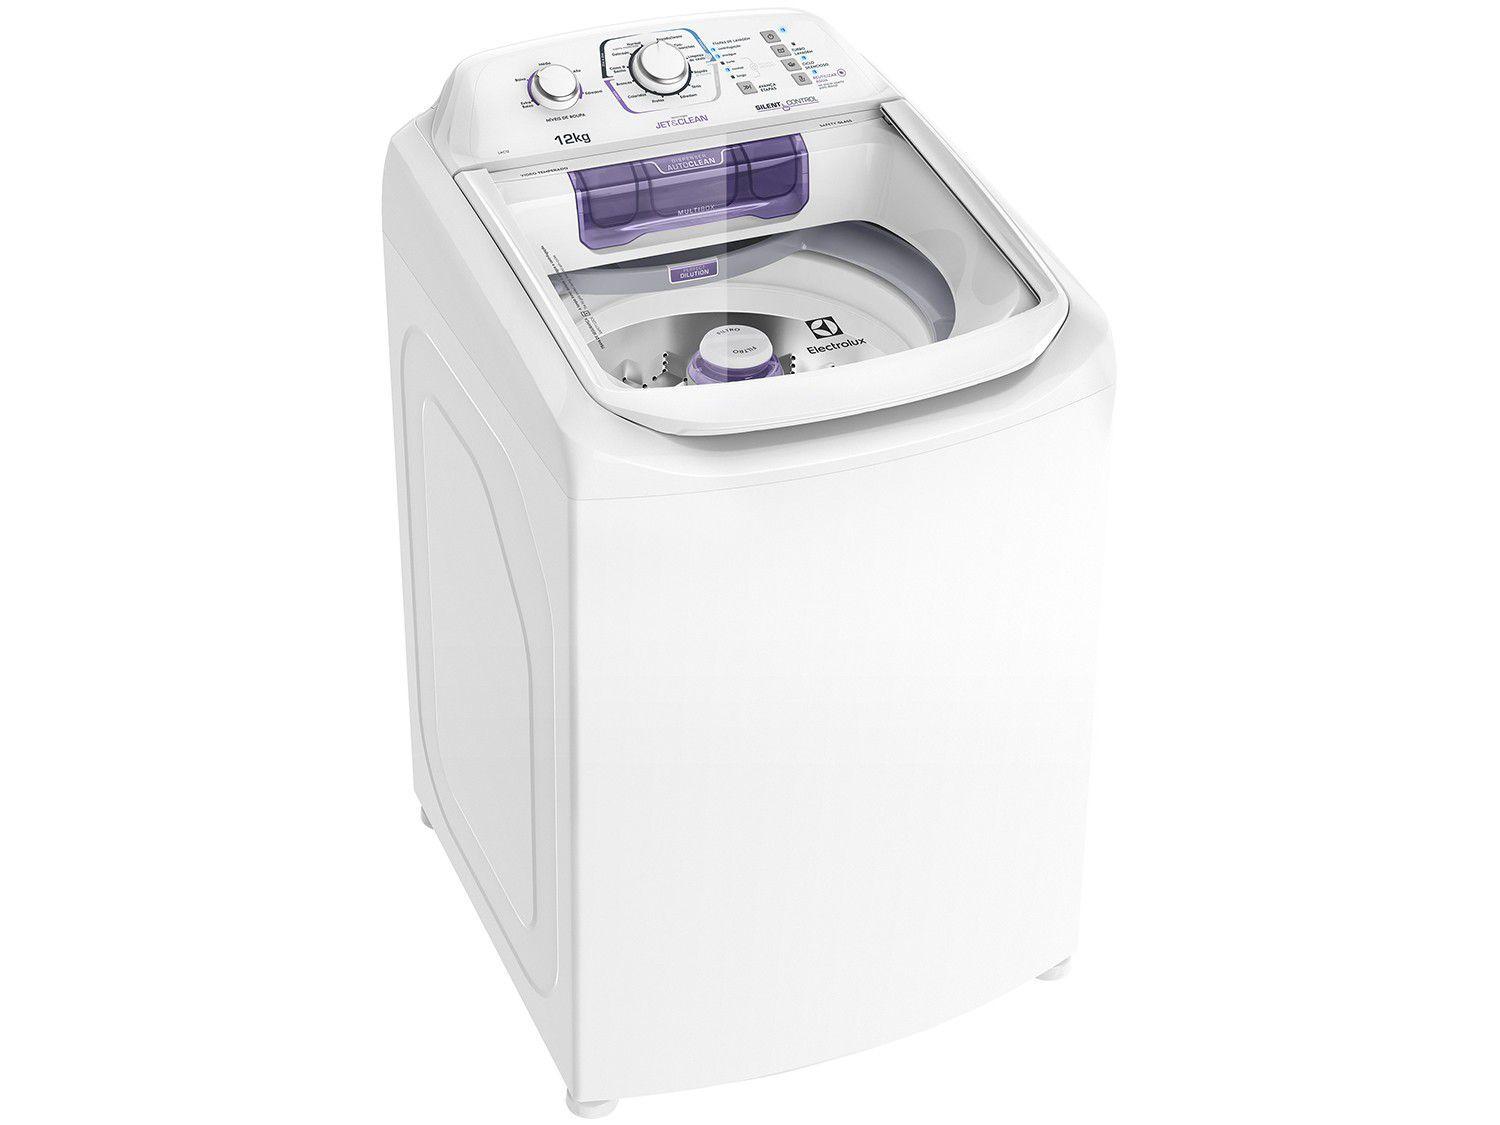 Melhor Máquina de Lavar Roupas Como Escolher um Modelo Bom?